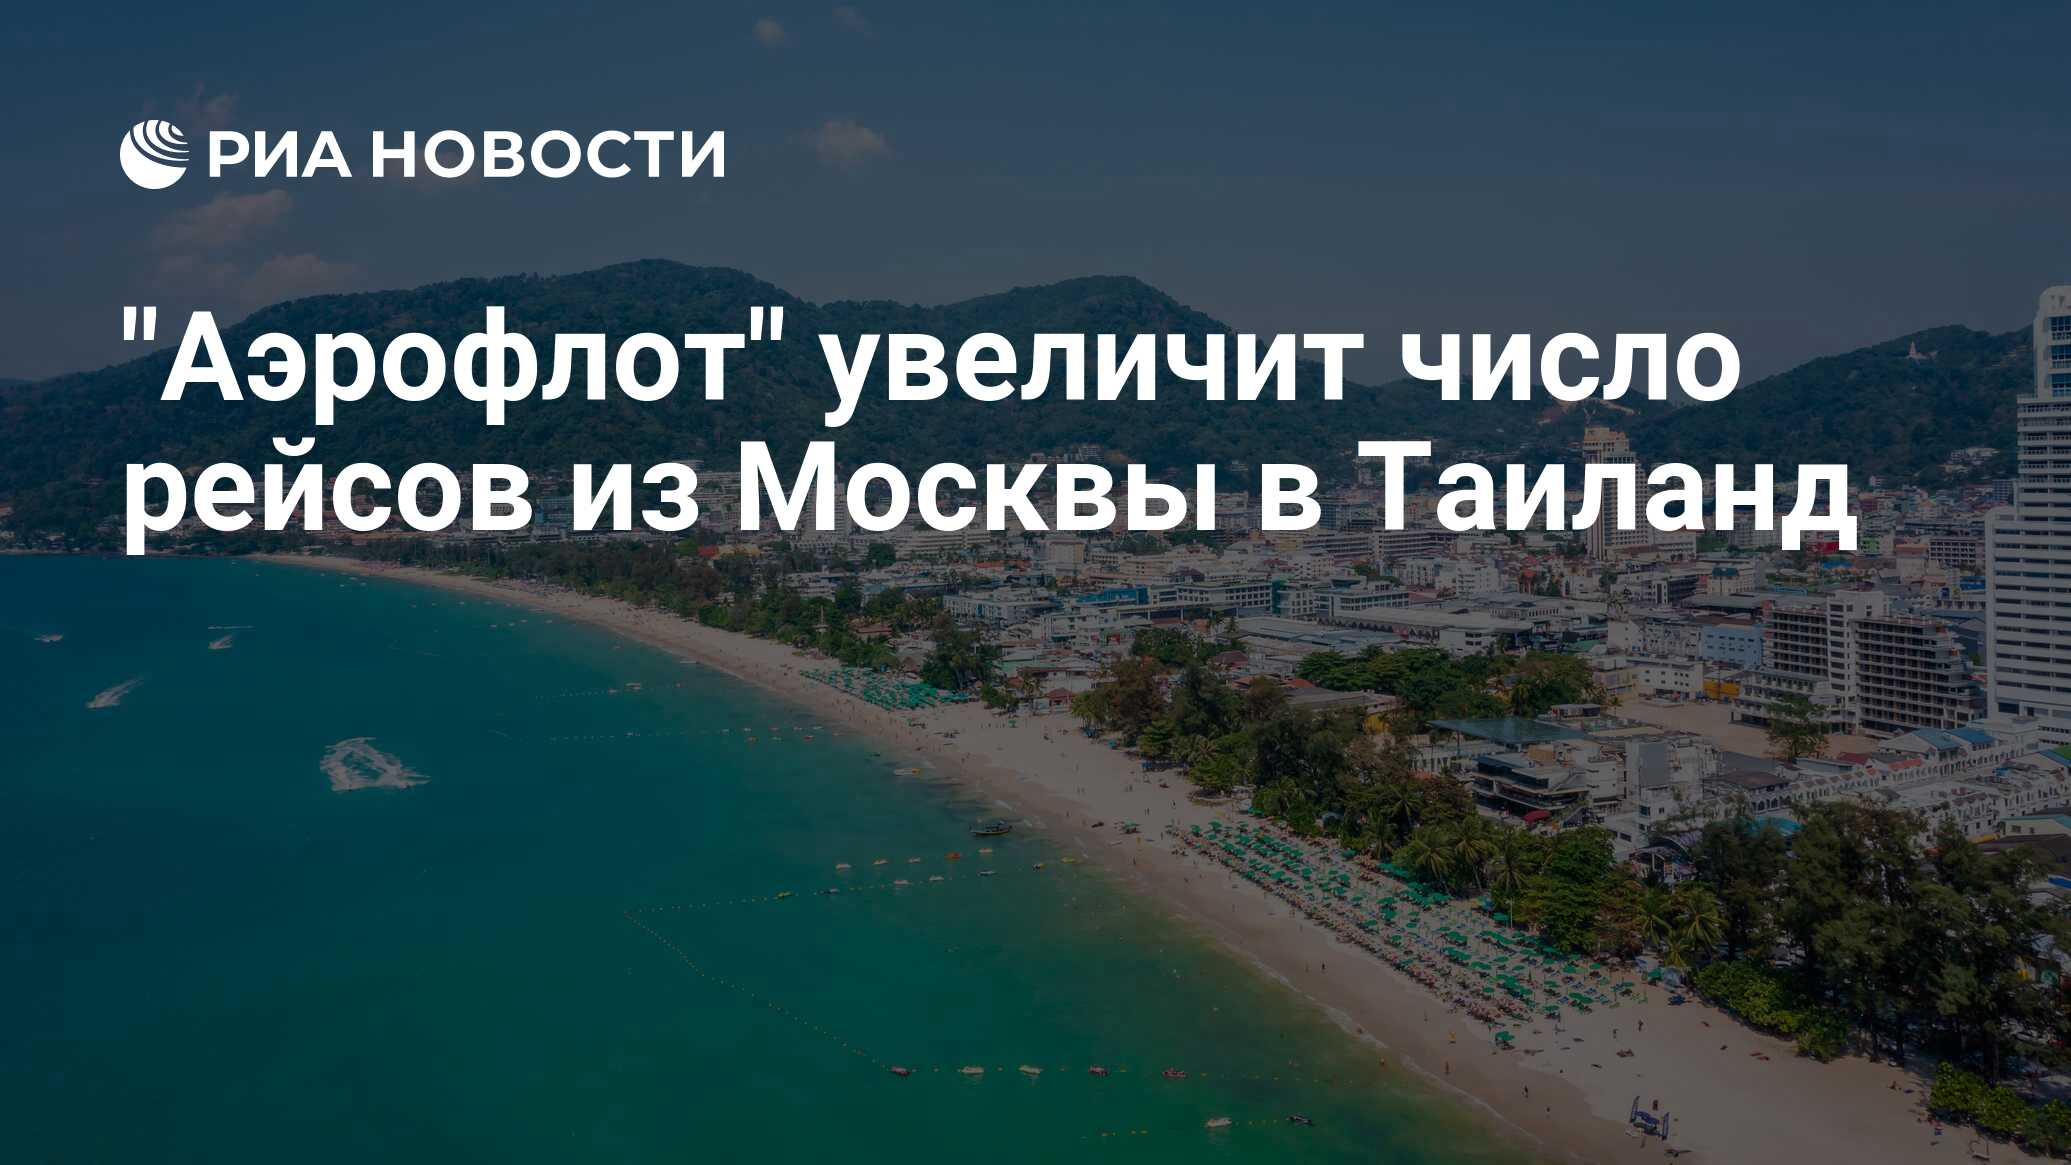 "Аэрофлот" увеличит число рейсов из Москвы в Таиланд